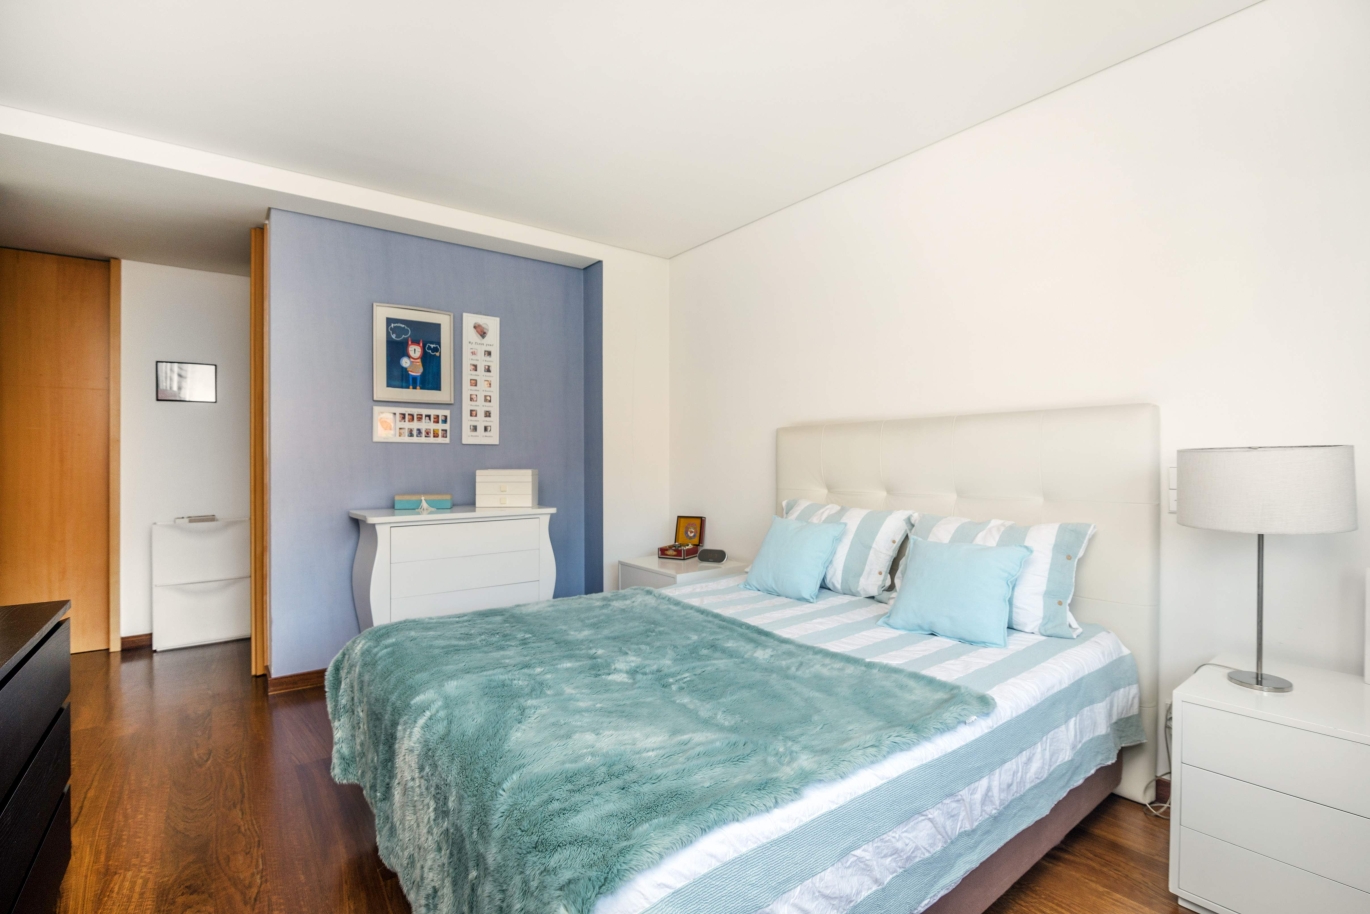 Venta apartamento en condominio privado con vistas río, Porto,Portugal_121040